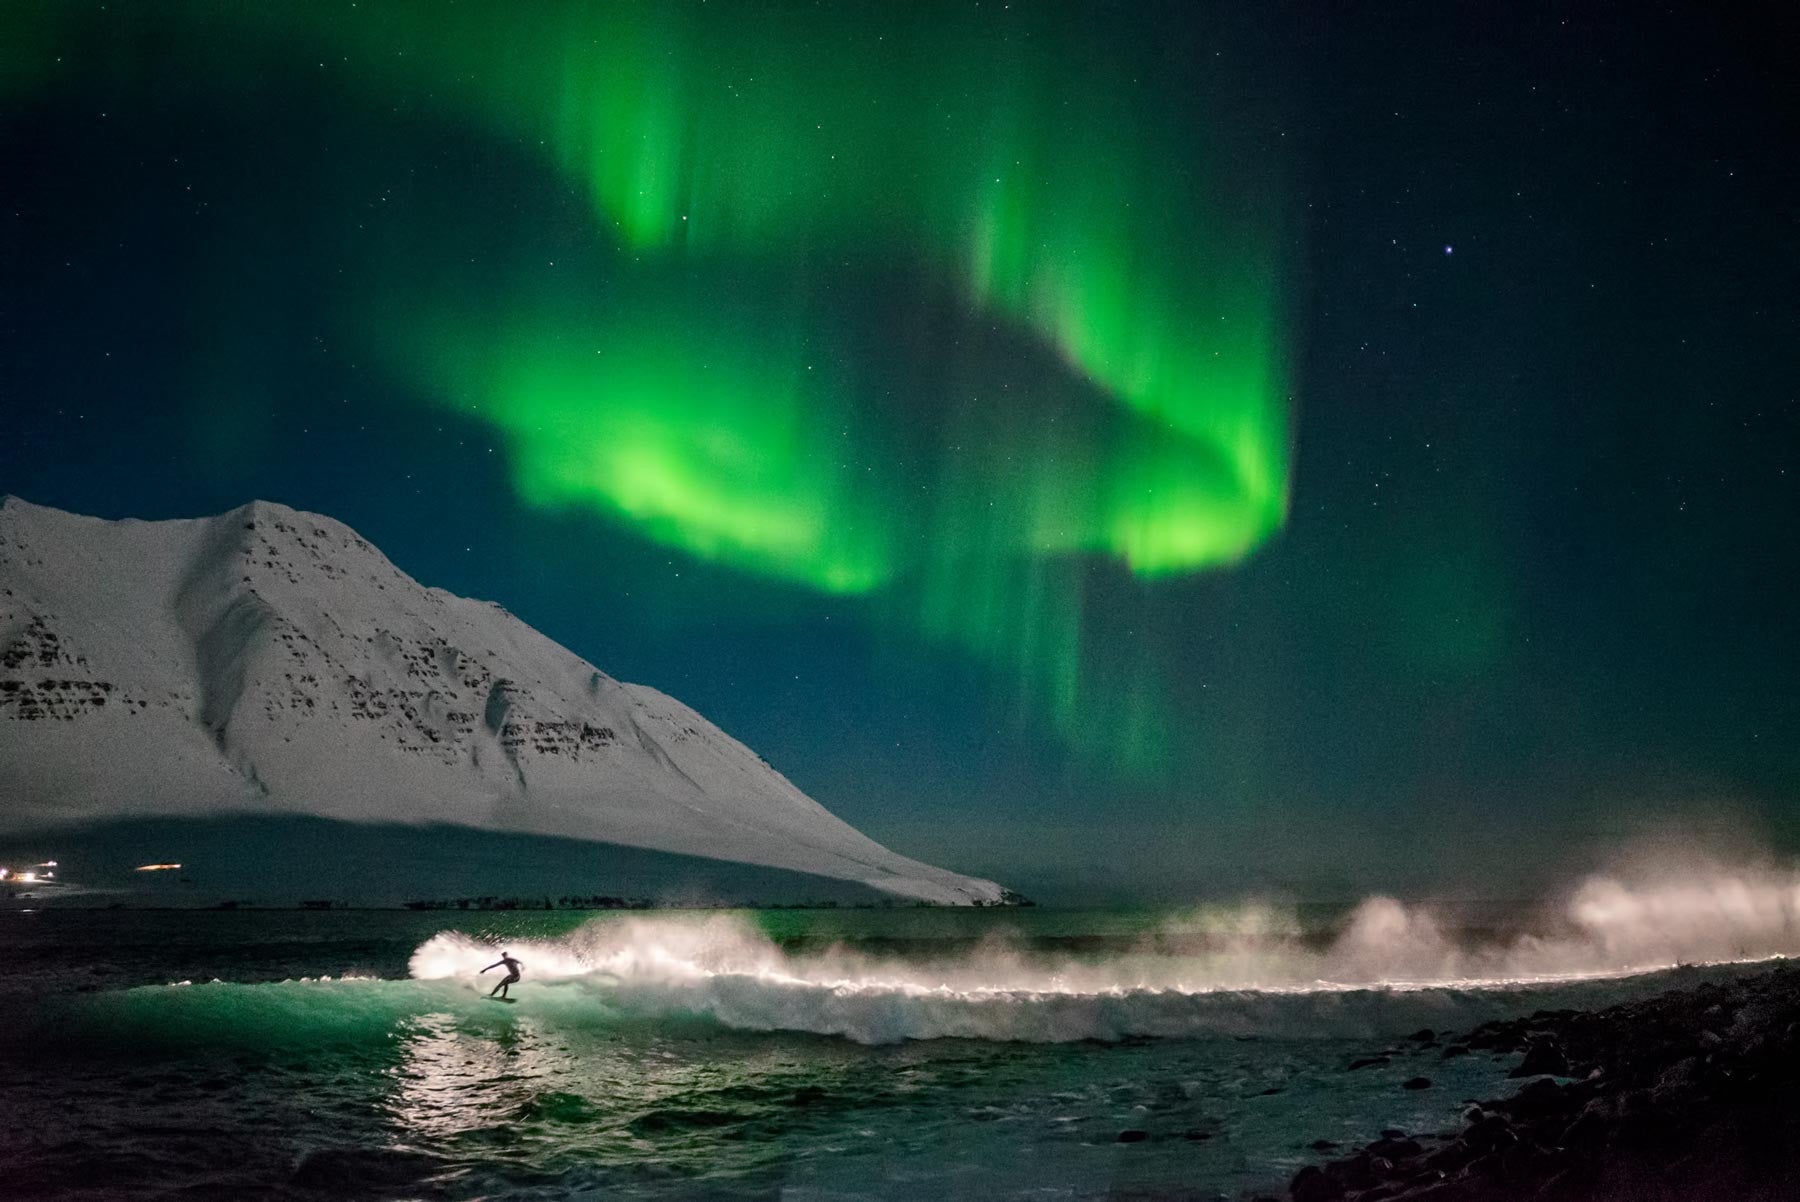 Under An Arctic Sky by Chris Burkard